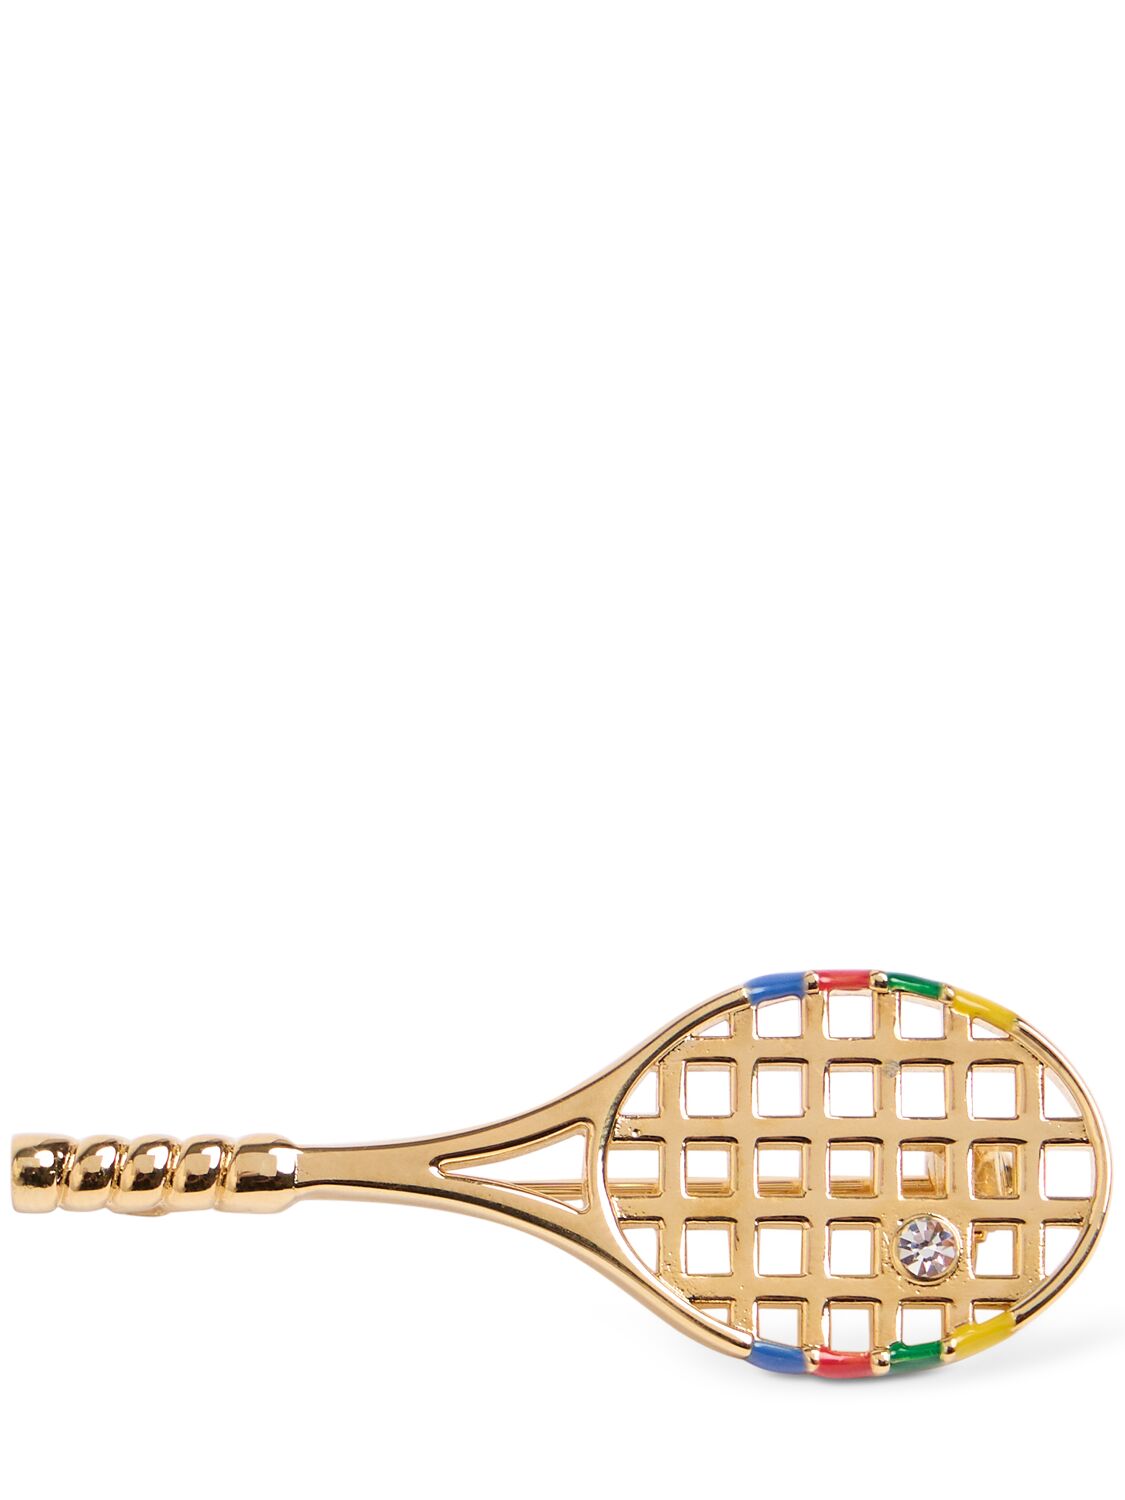 Tennis Racket Brooch